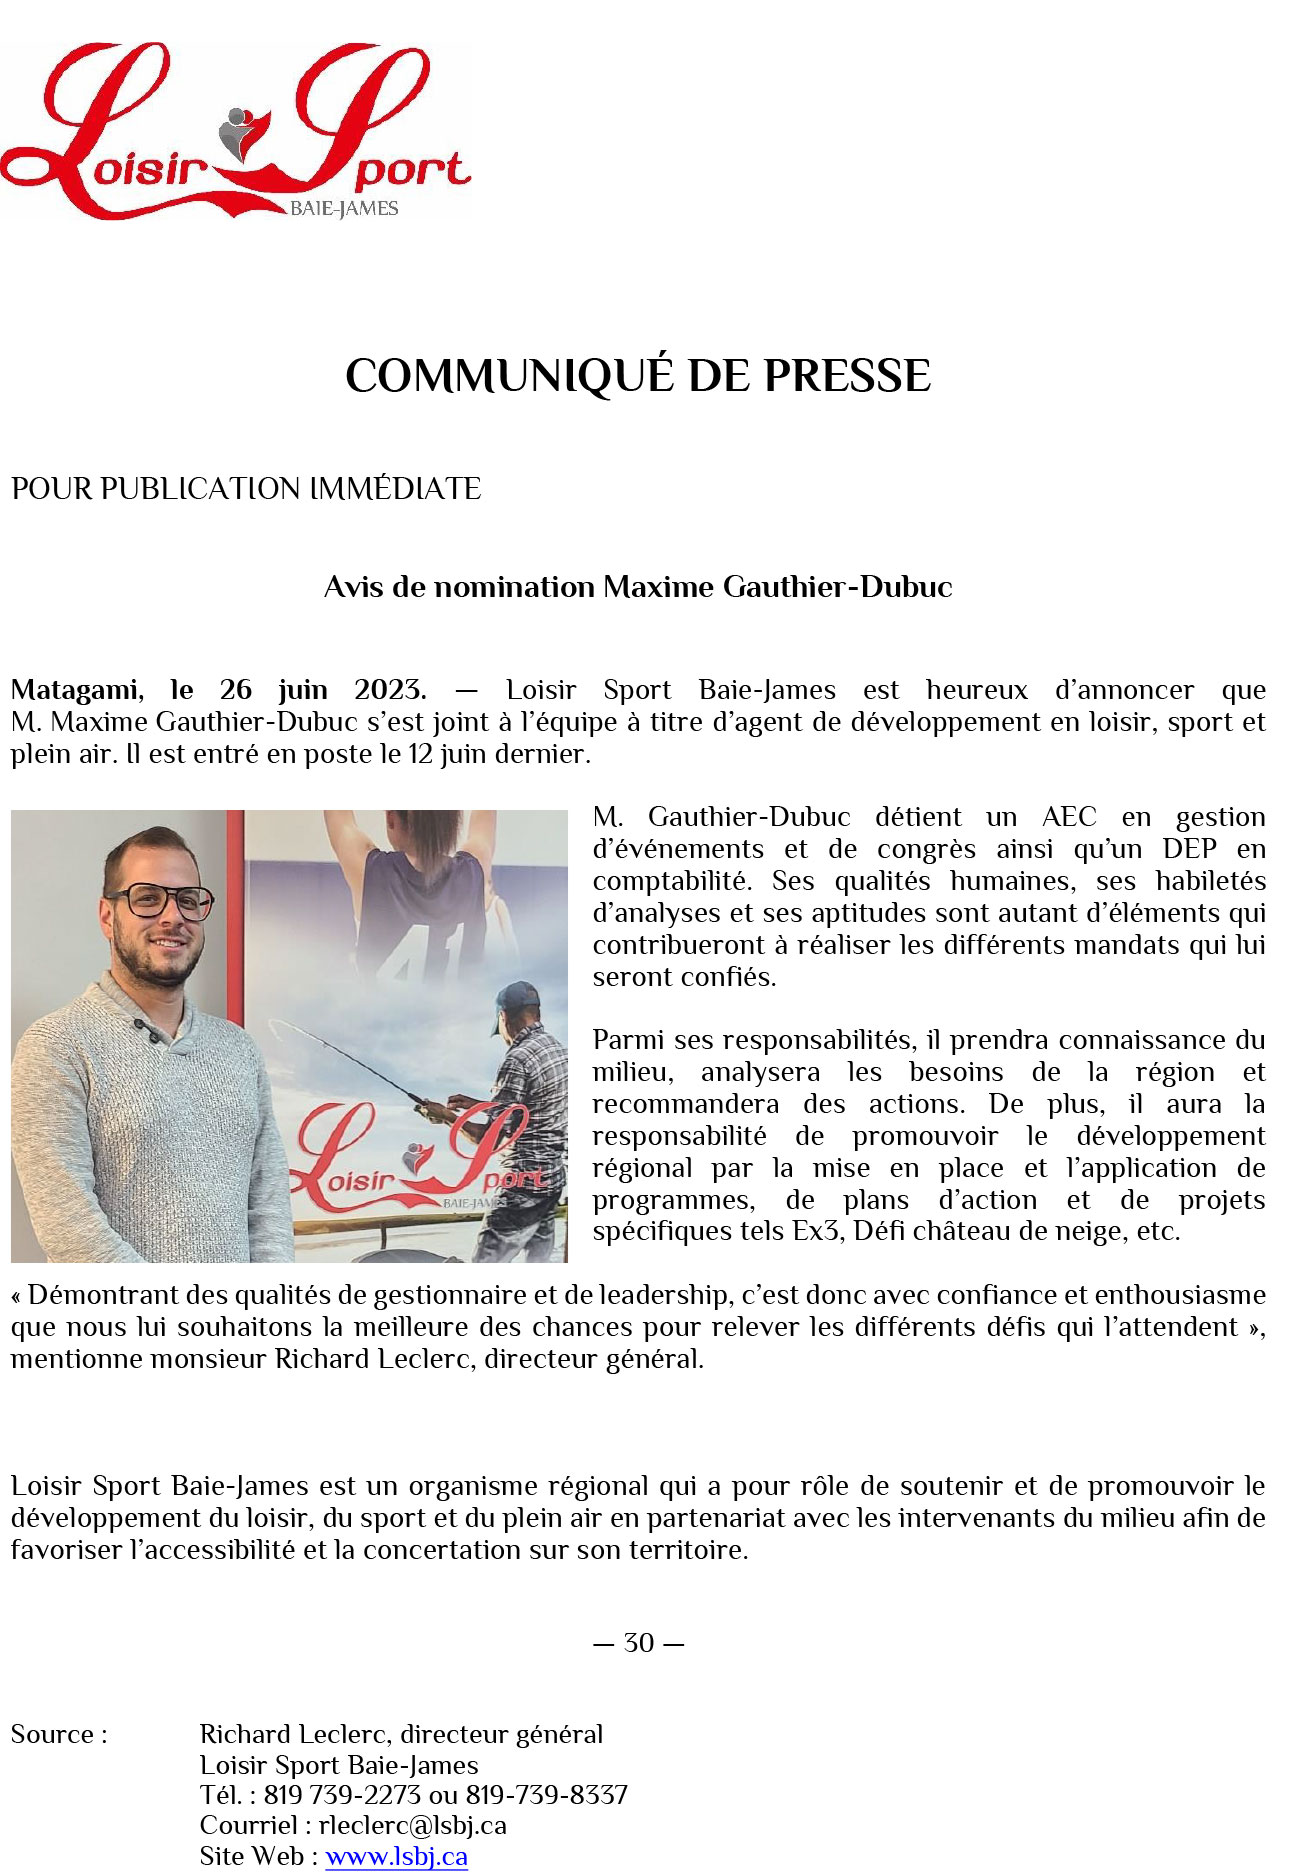 Communiqué de presse Maxime Gauthier Dupuis